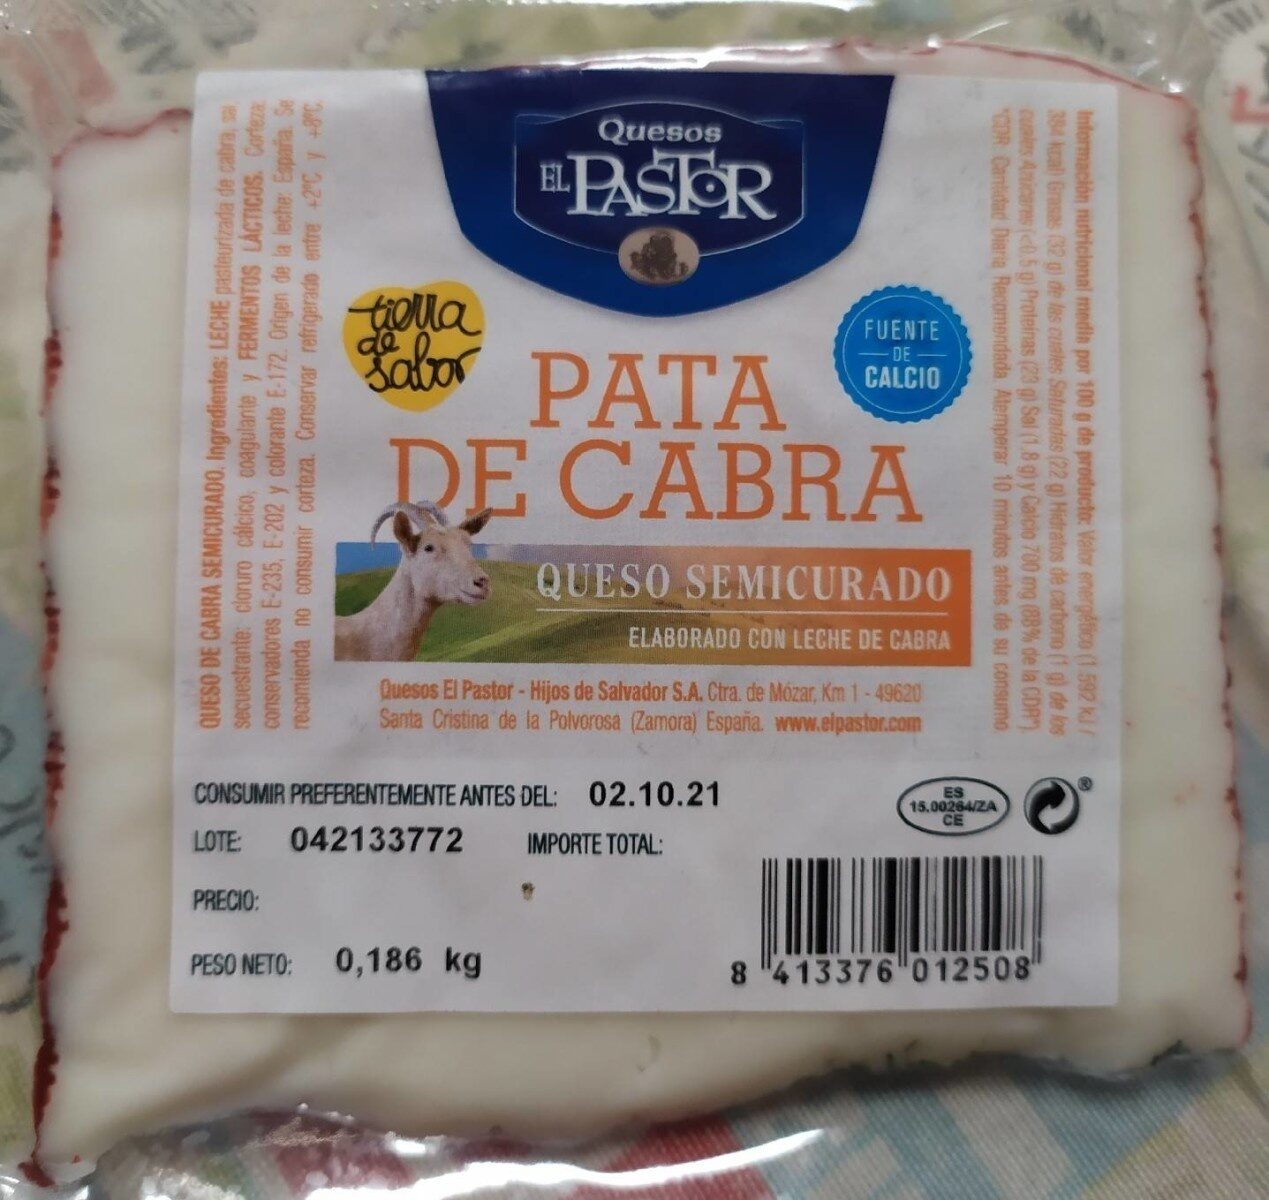 Para de cabra queso semicurado - Producto